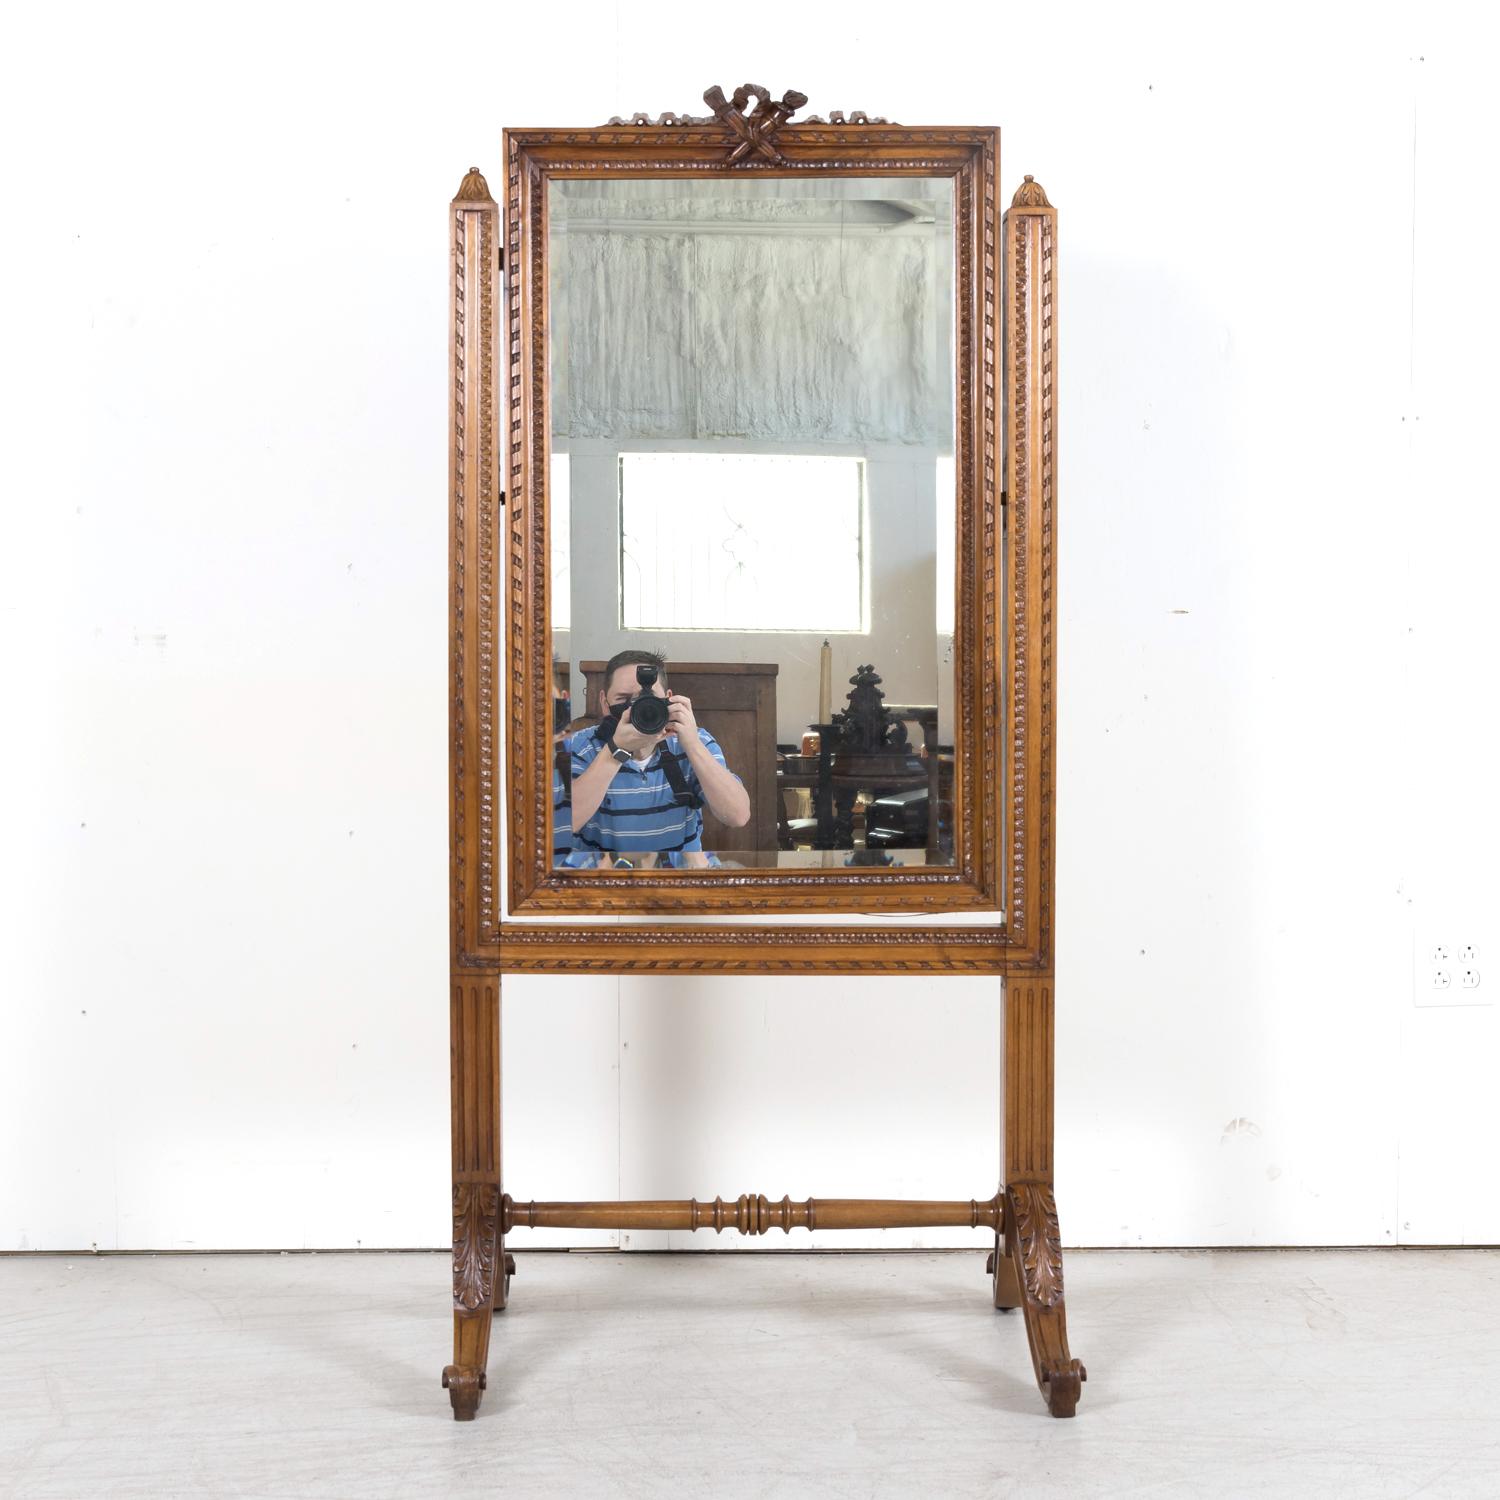 Exceptionnel miroir de coiffeuse de style Louis XVI du XIXe siècle, fabriqué à la main en noyer, vers les années 1880, avec le miroir biseauté d'origine à l'intérieur d'un cadre en noyer magnifiquement sculpté avec des motifs néoclassiques typiques